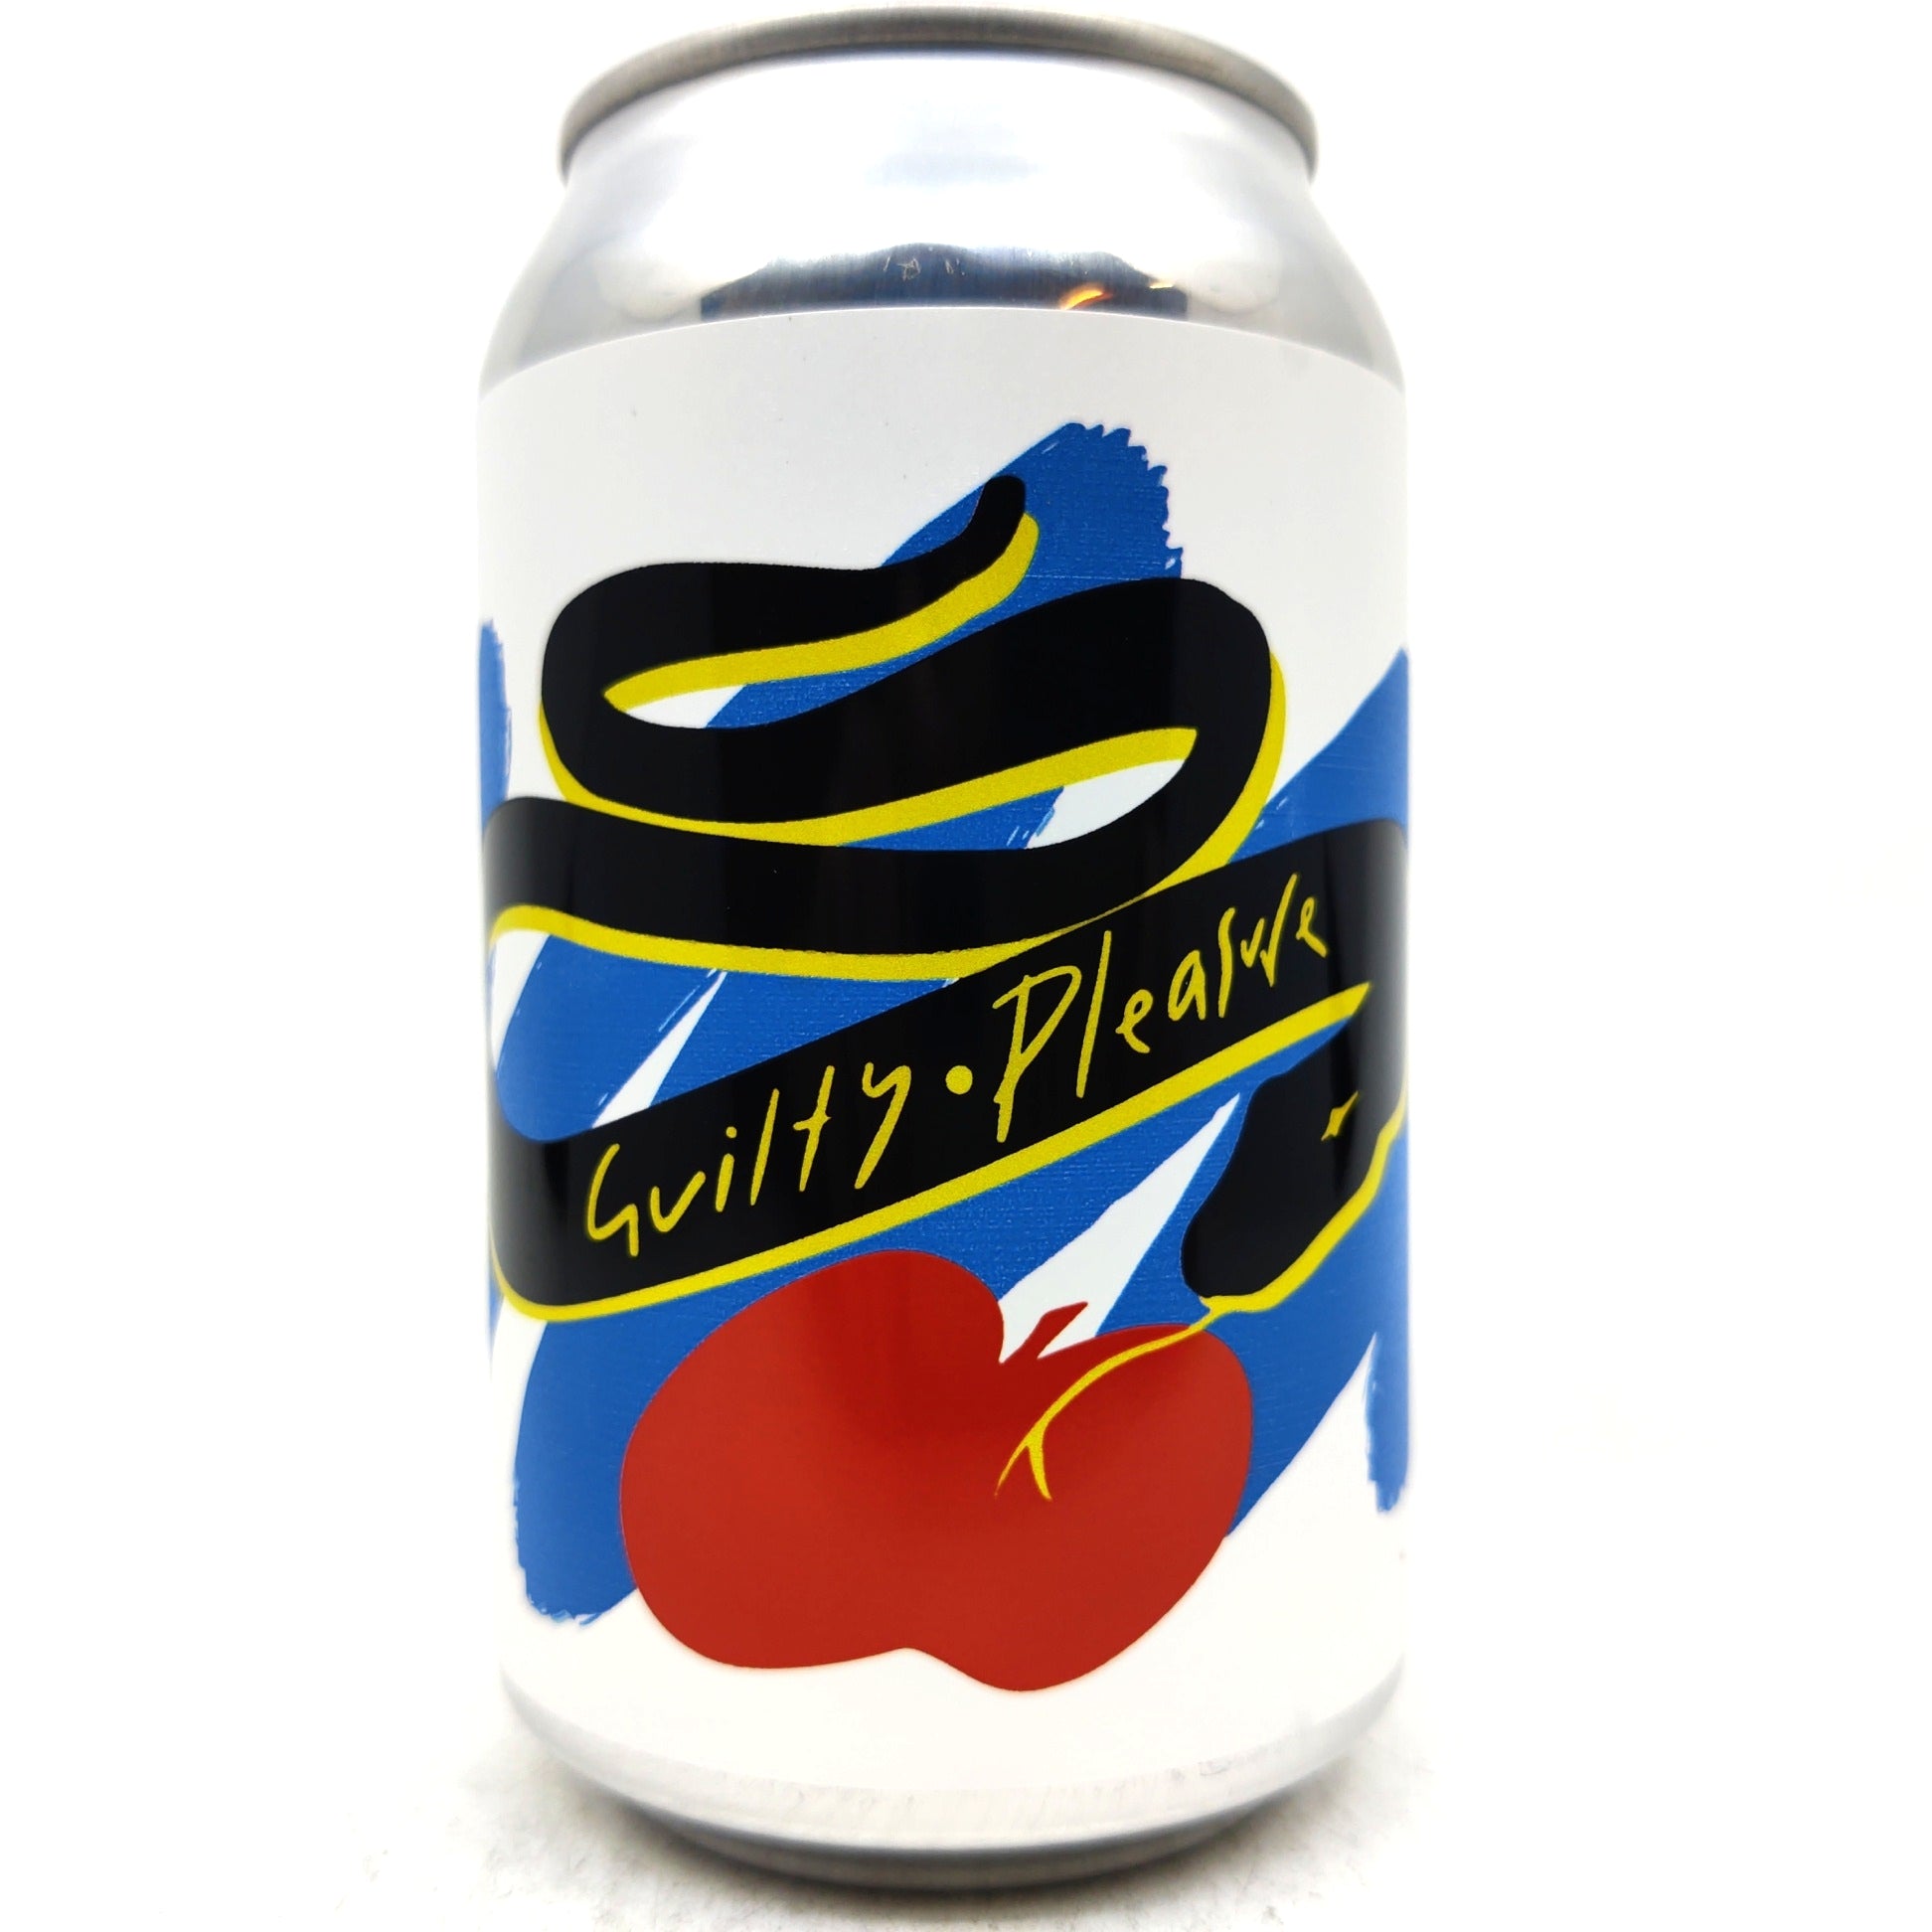 Oliver's Cider Guilty Pleasure 6.3% (330ml can)-Hop Burns & Black